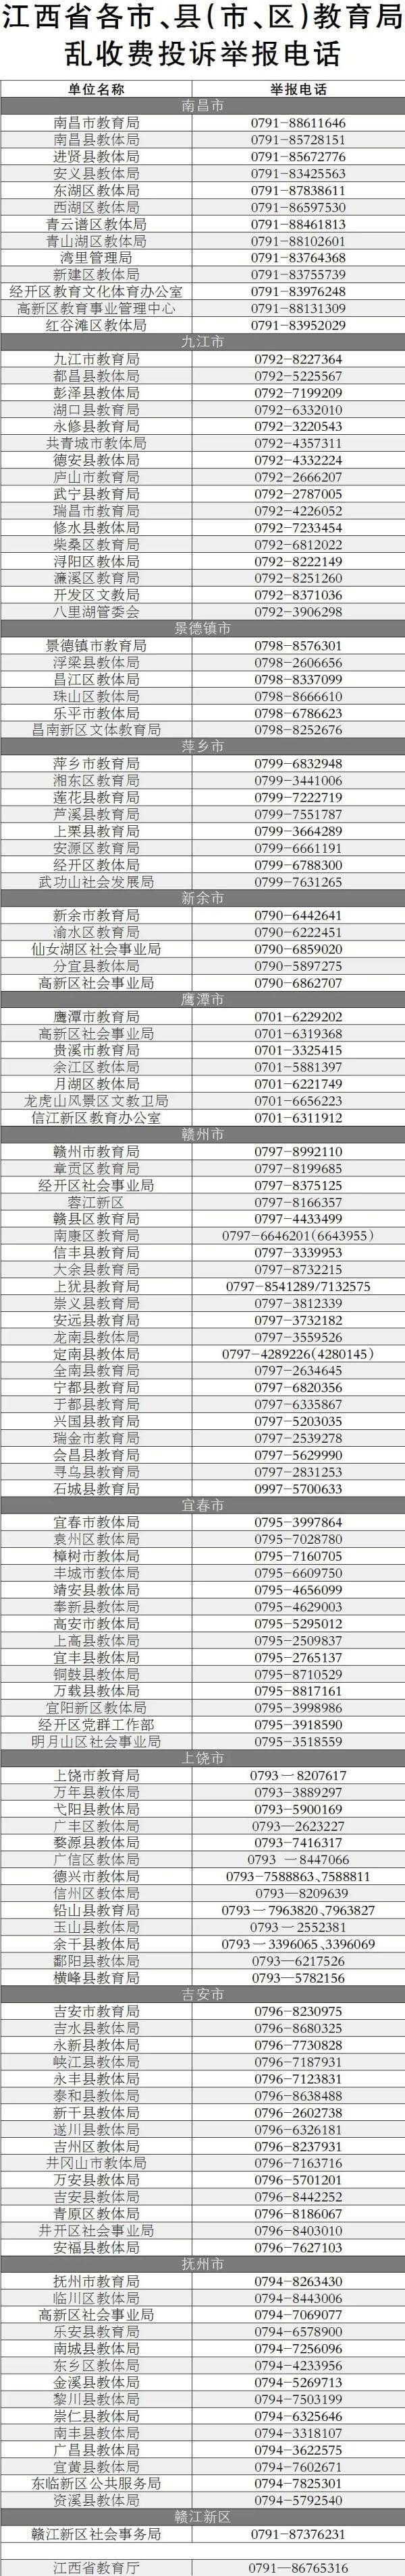 江西省教育考试院网络助学平台_江西省教育考试服务平台